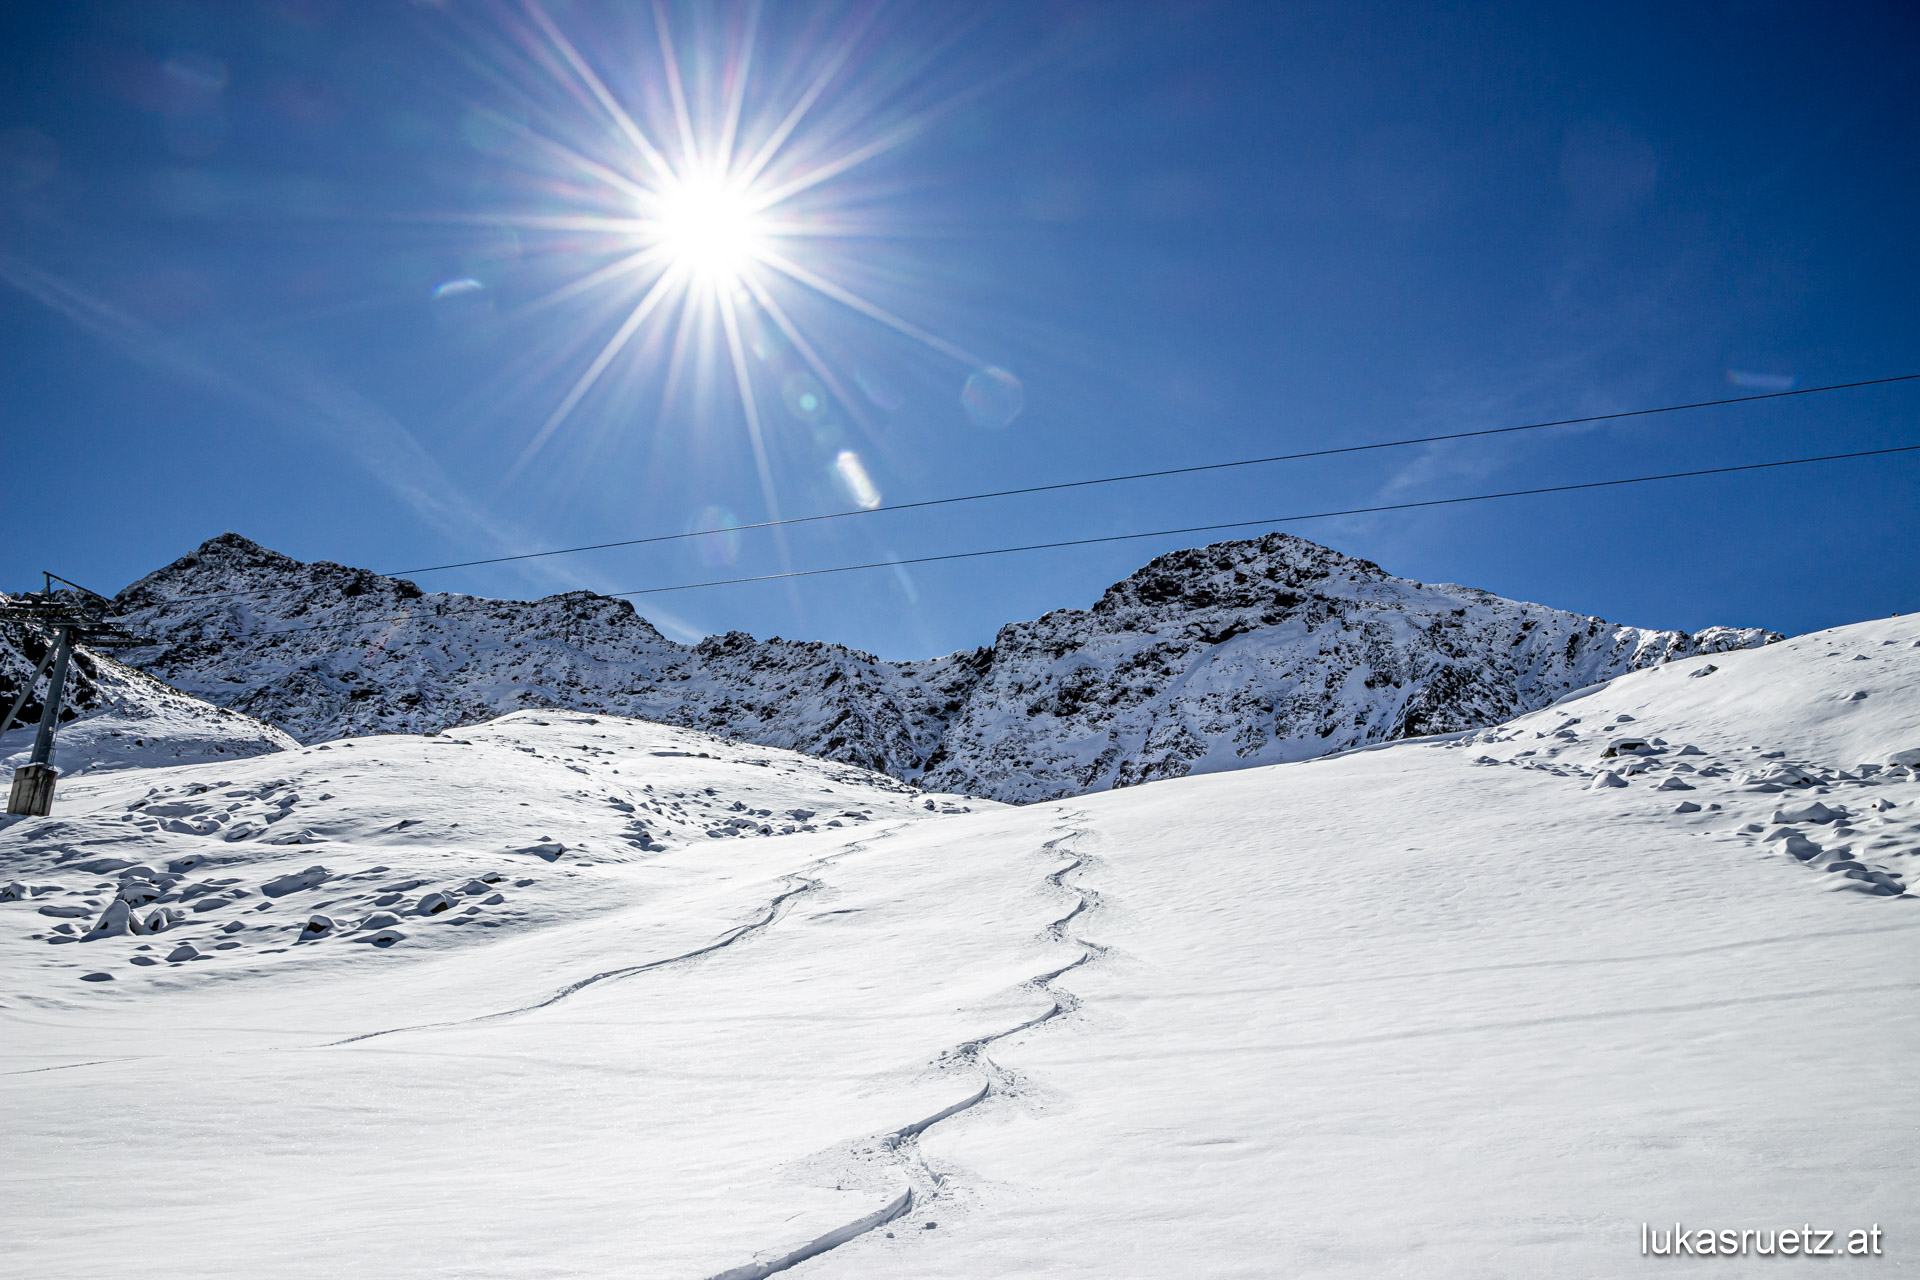 Starkschneefall im September 2020 & Allgemeines zu Skitouren im Herbst